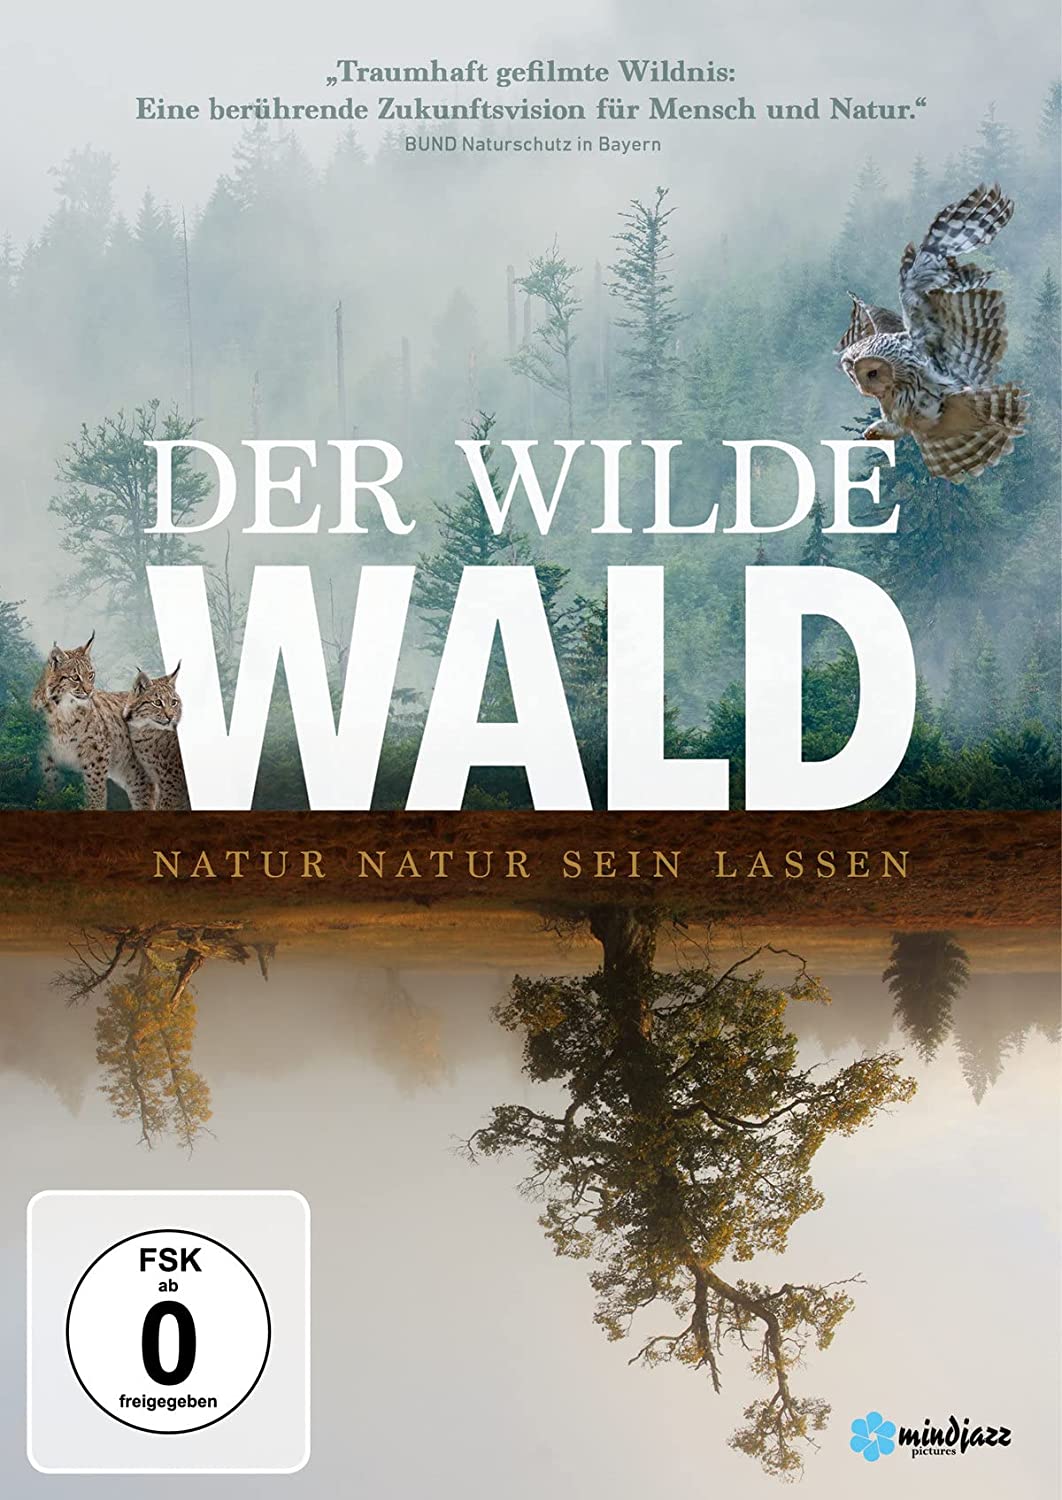 17.11.: Der wilde Wald – Natur Natur sein lassen (Film)